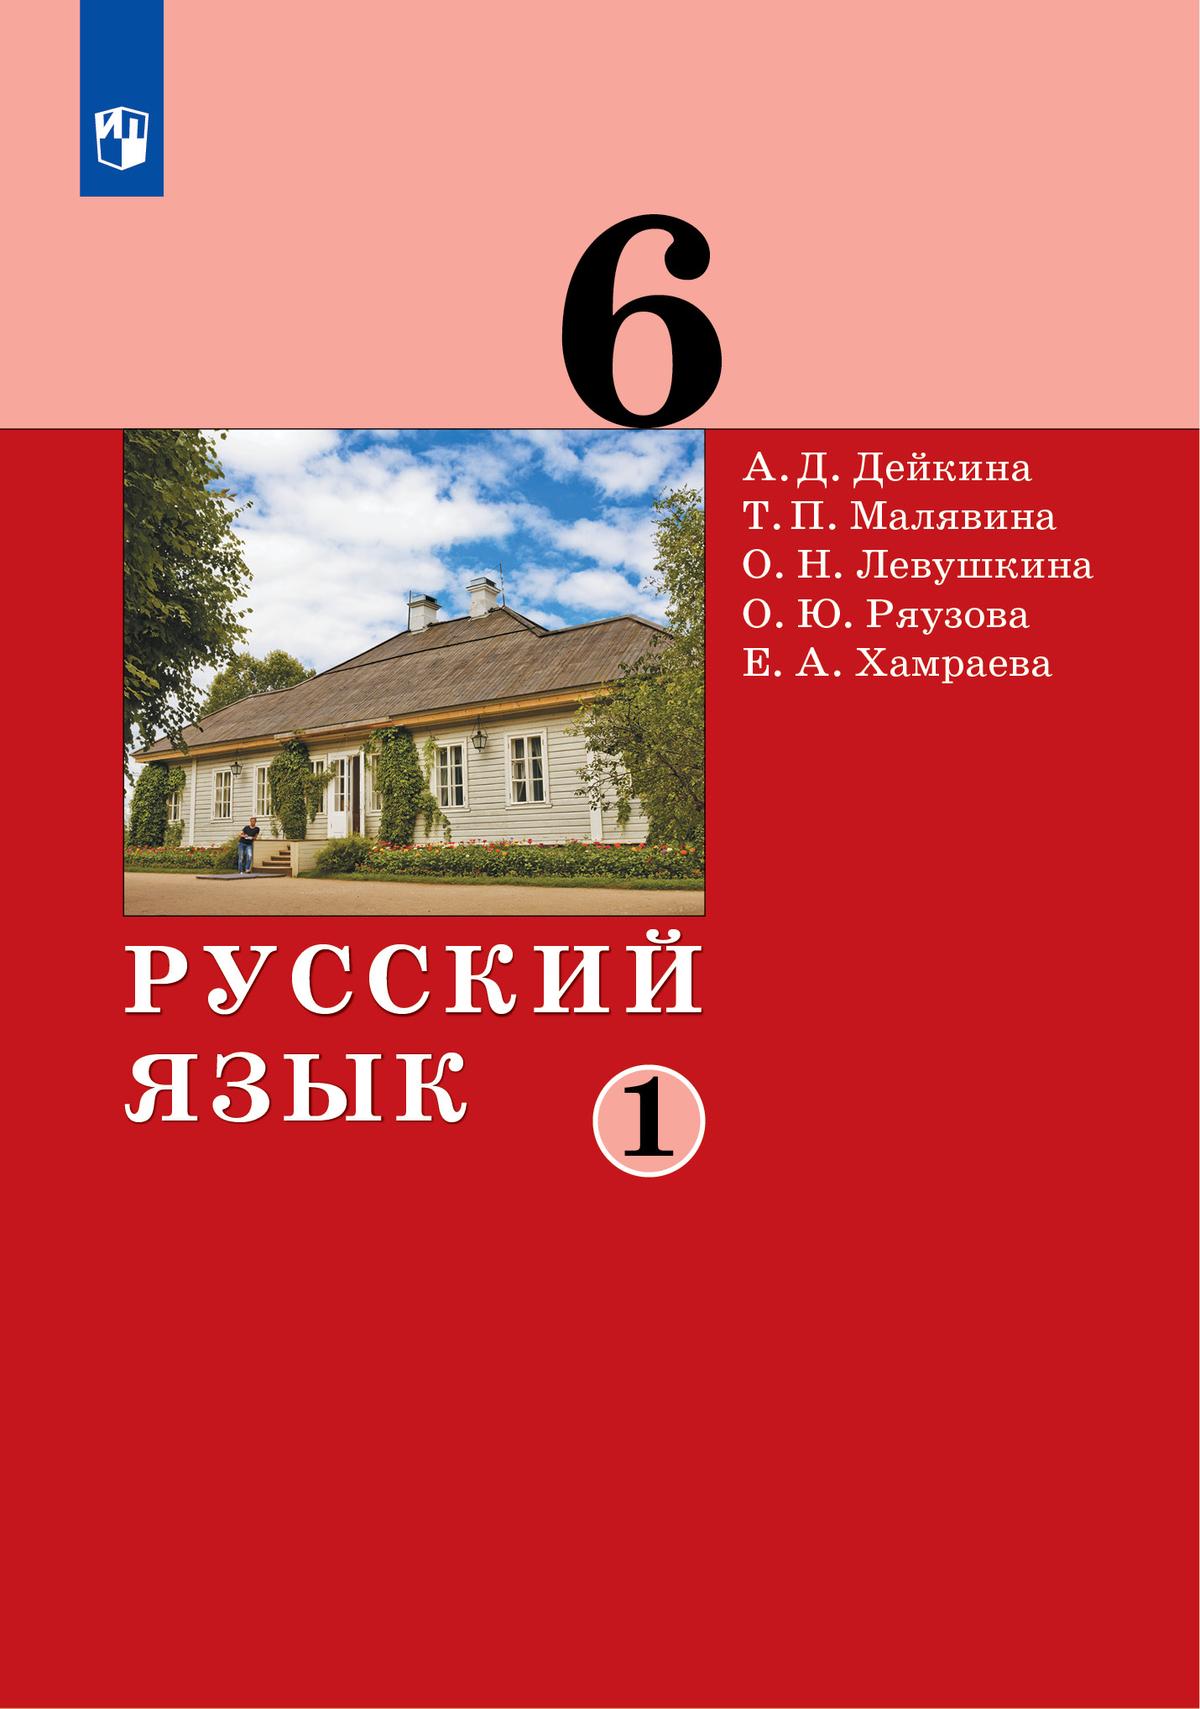 Русский язык. 6 класс. Электронная форма учебника. 2 ч. Часть 1 1